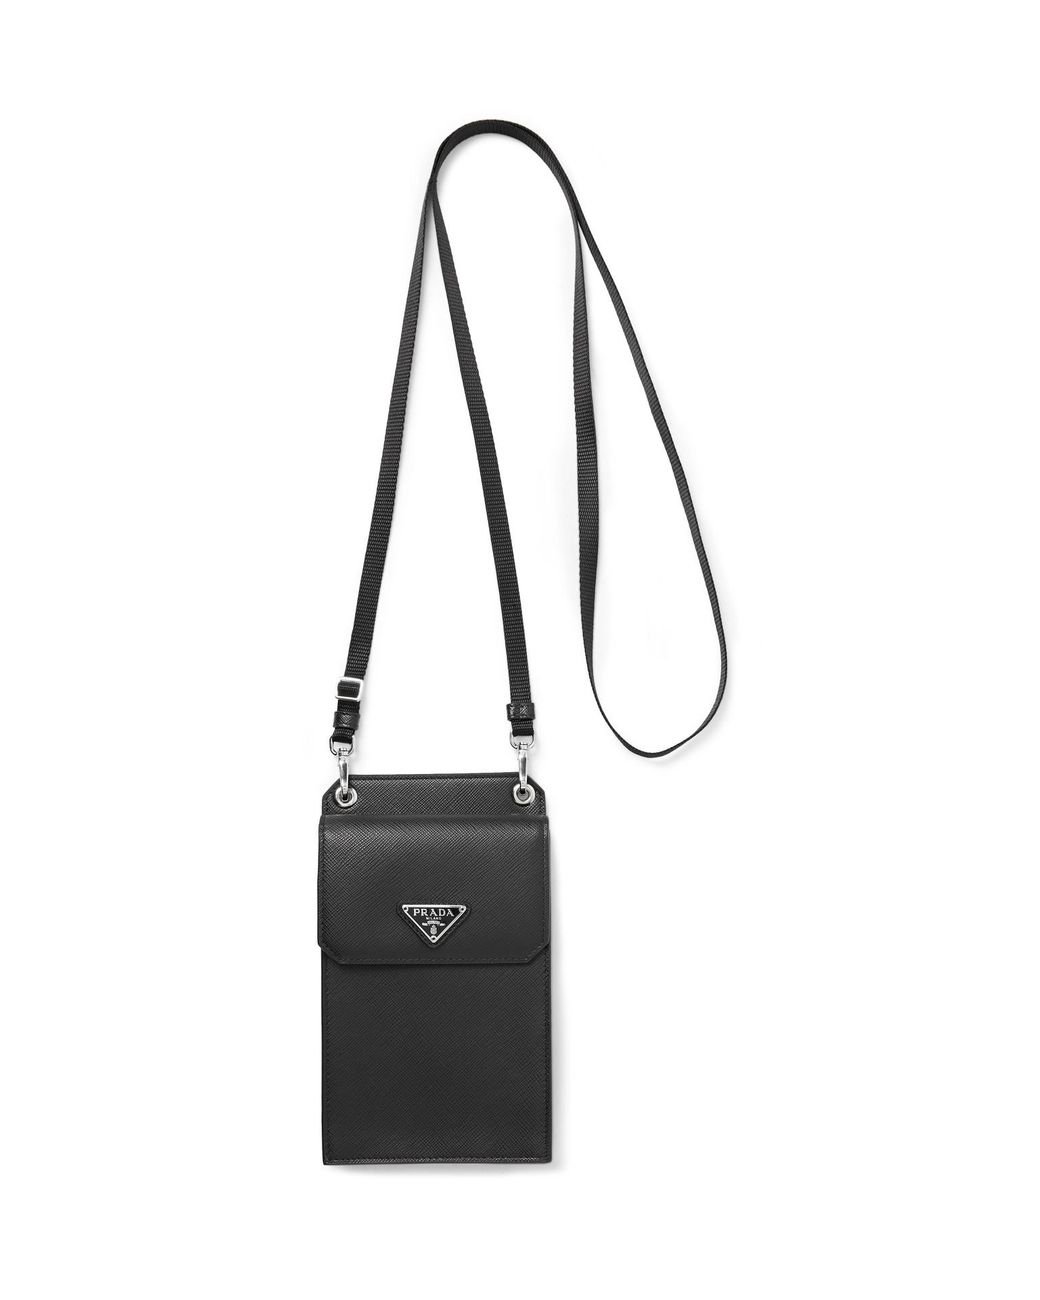 Prada Re-Nylon and Saffiano Leather Smartphone Case, Men, Black